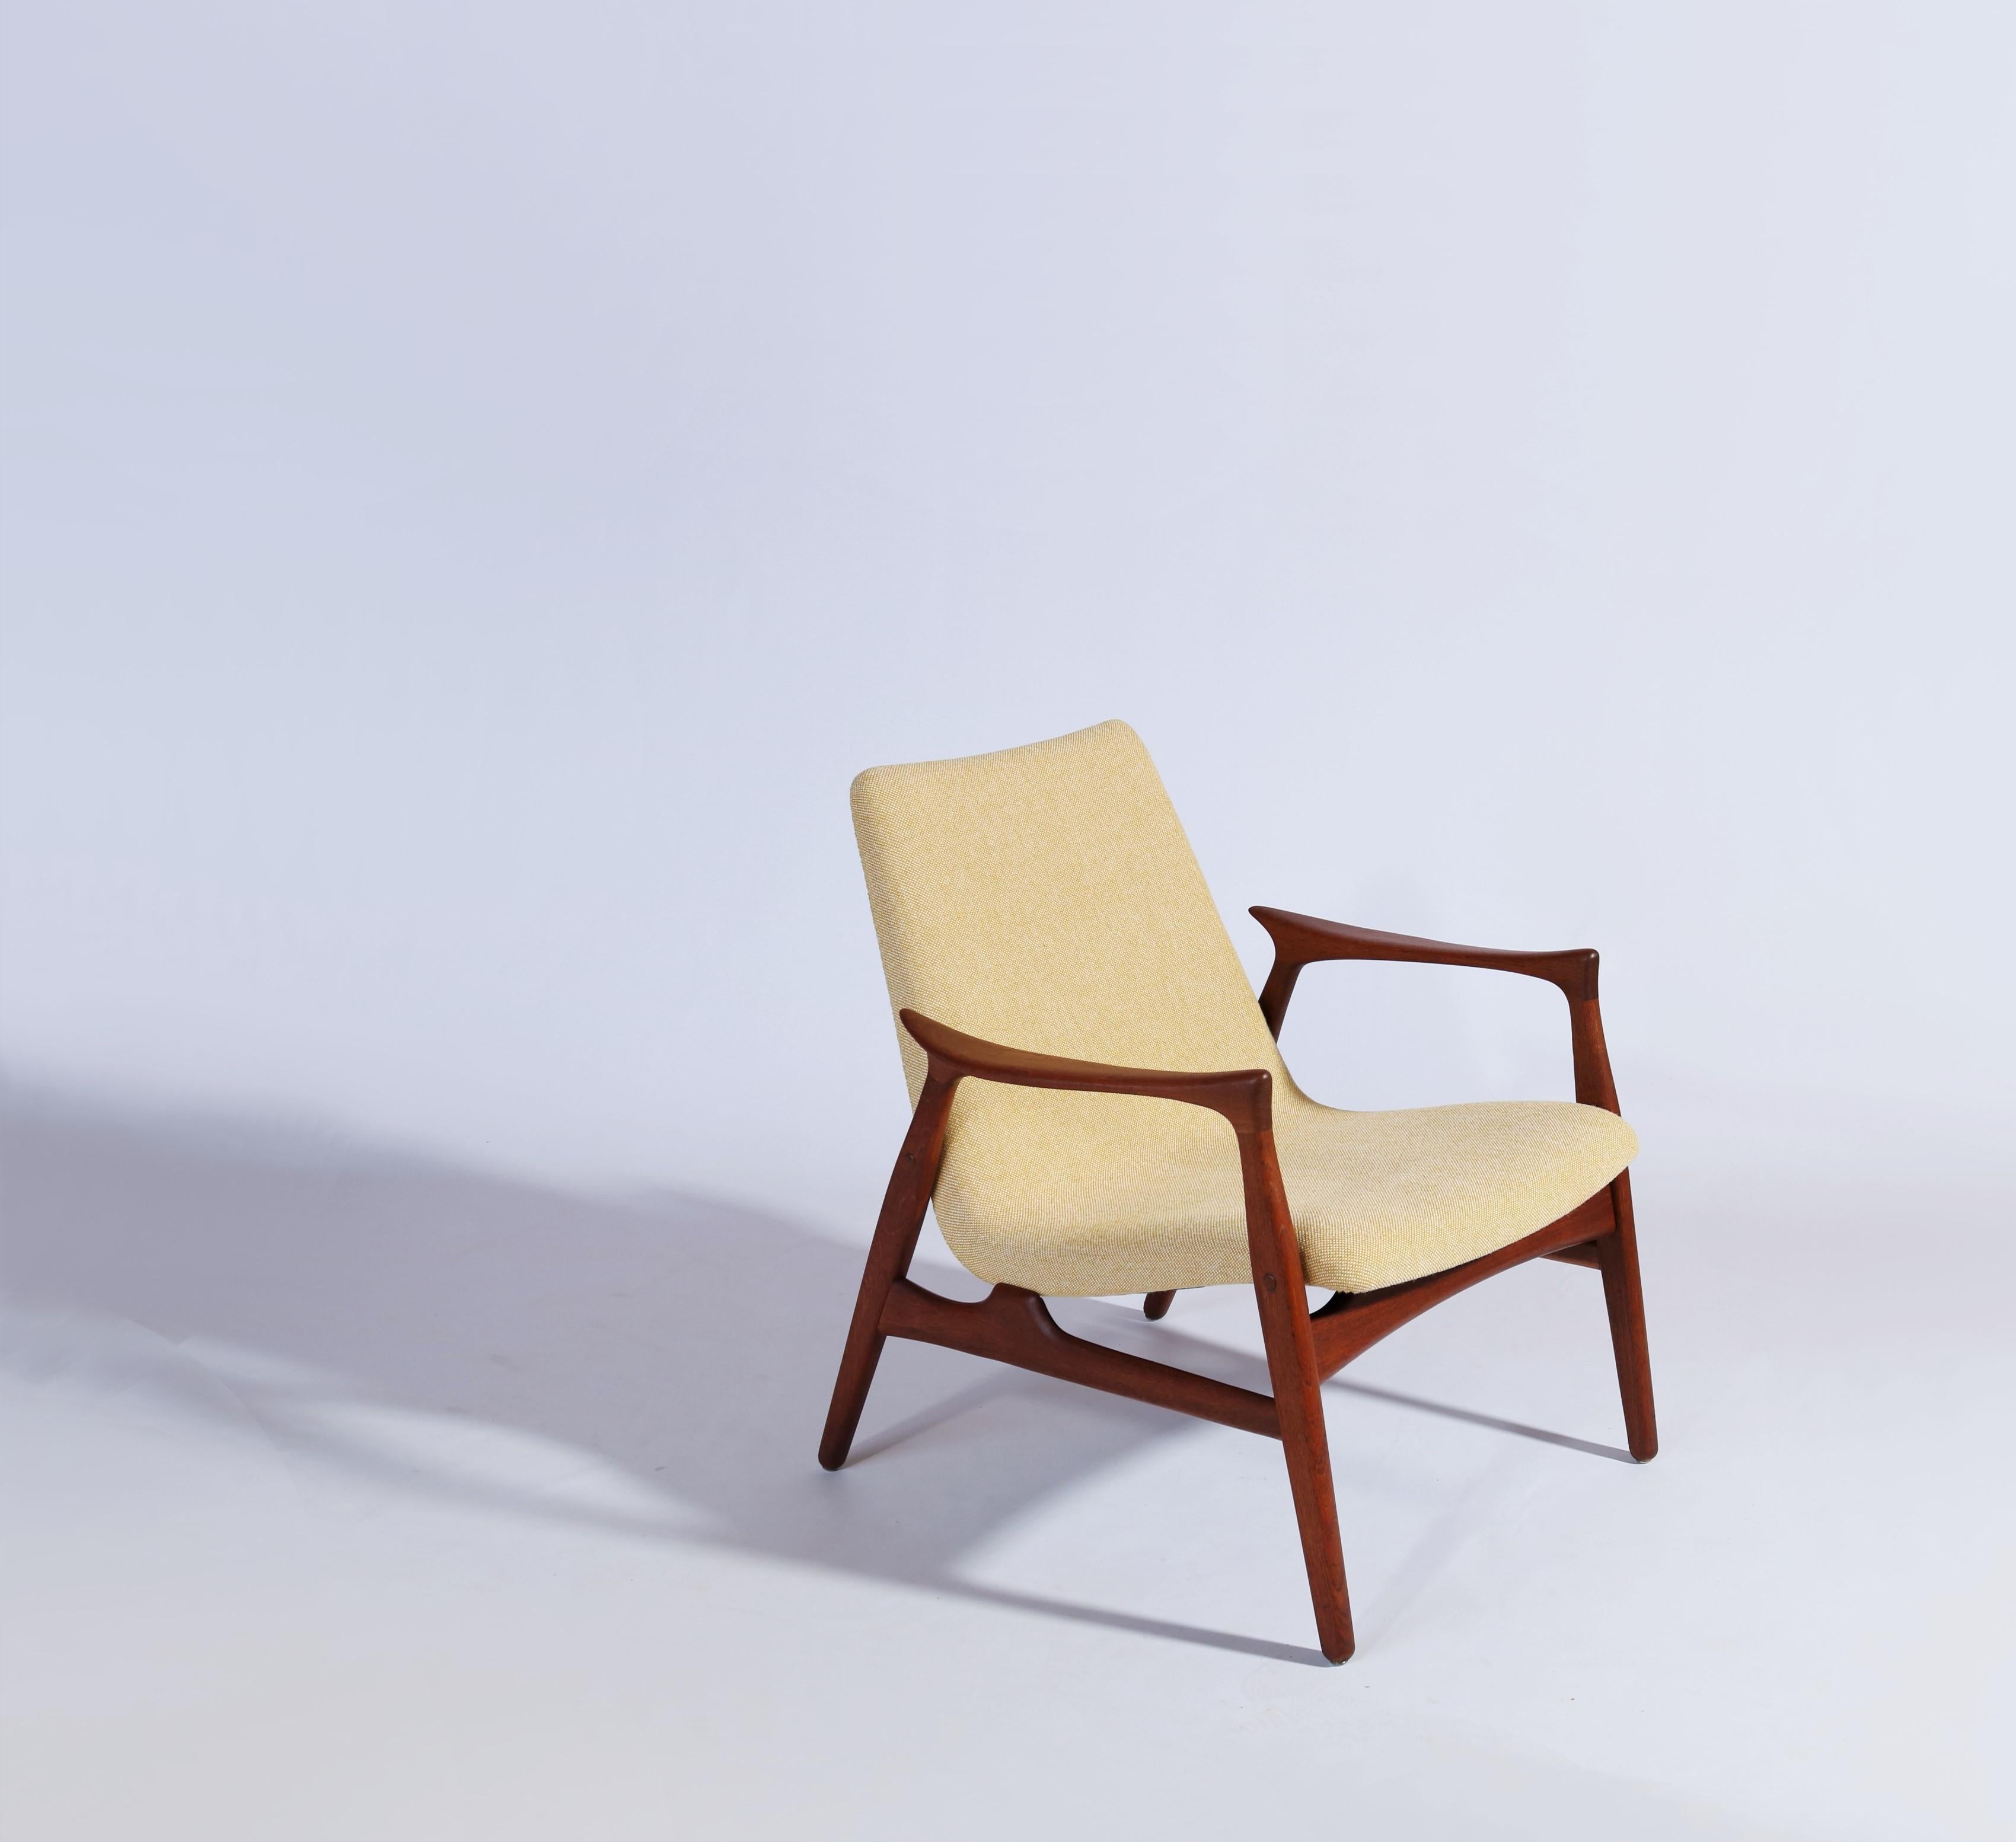 Mid-20th Century Danish Modern Easy Chair in Teak Wood by Arne Hovmand Olsen, Denmark, 1958